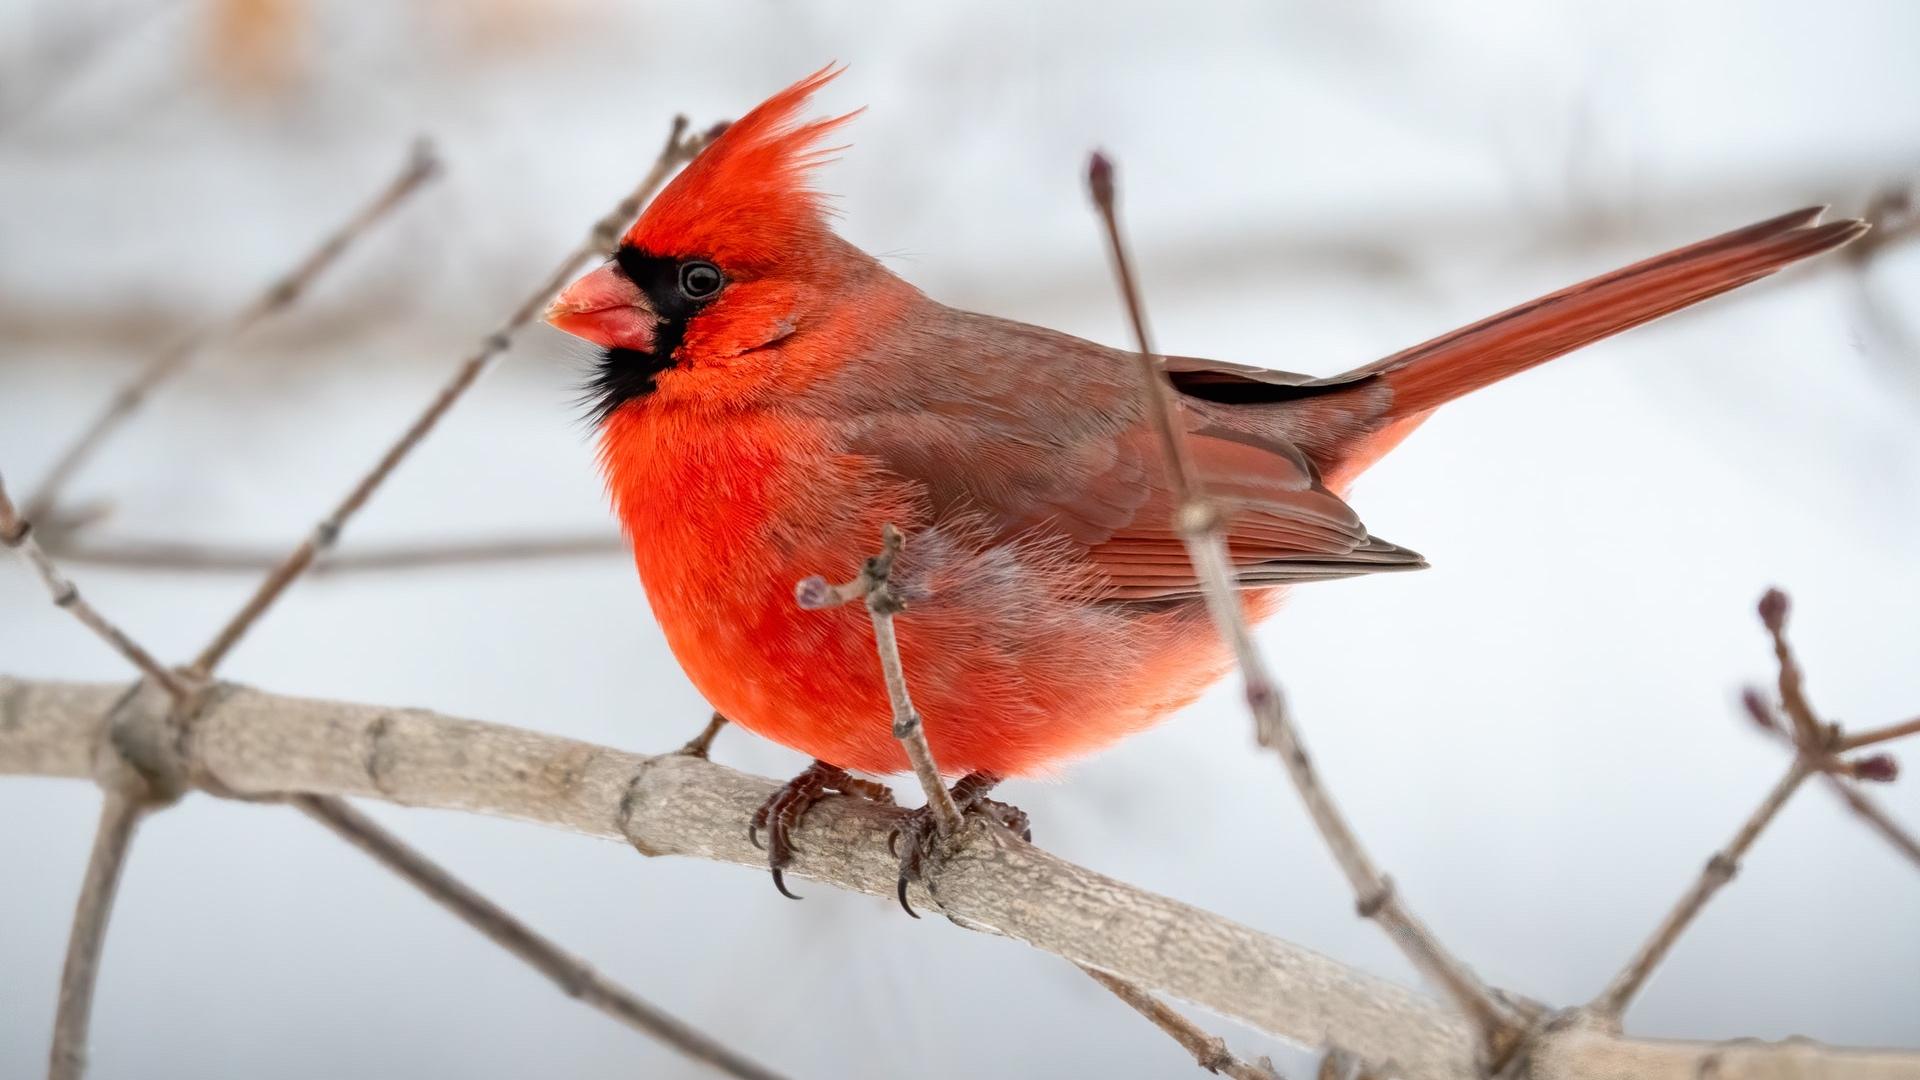 The 2021 Great Backyard Bird Count runs Feb. 12-15. (Tina Nord / Pexels)